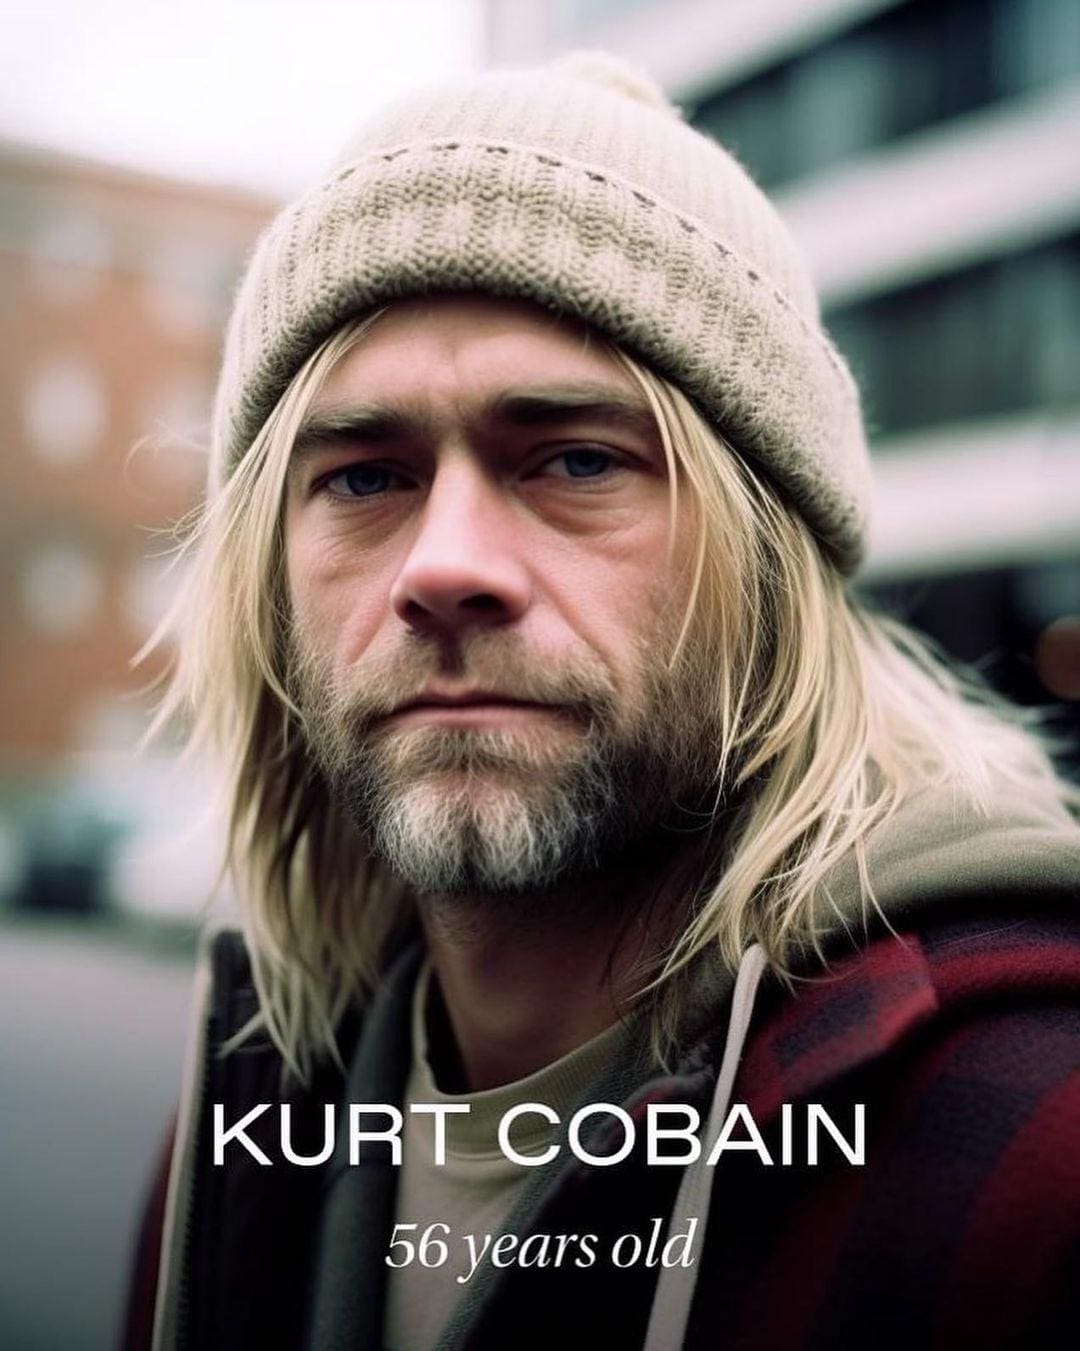 Projeção feita por meio de inteligência artificial mostra como Kurt Cobain estaria aos 56 anos